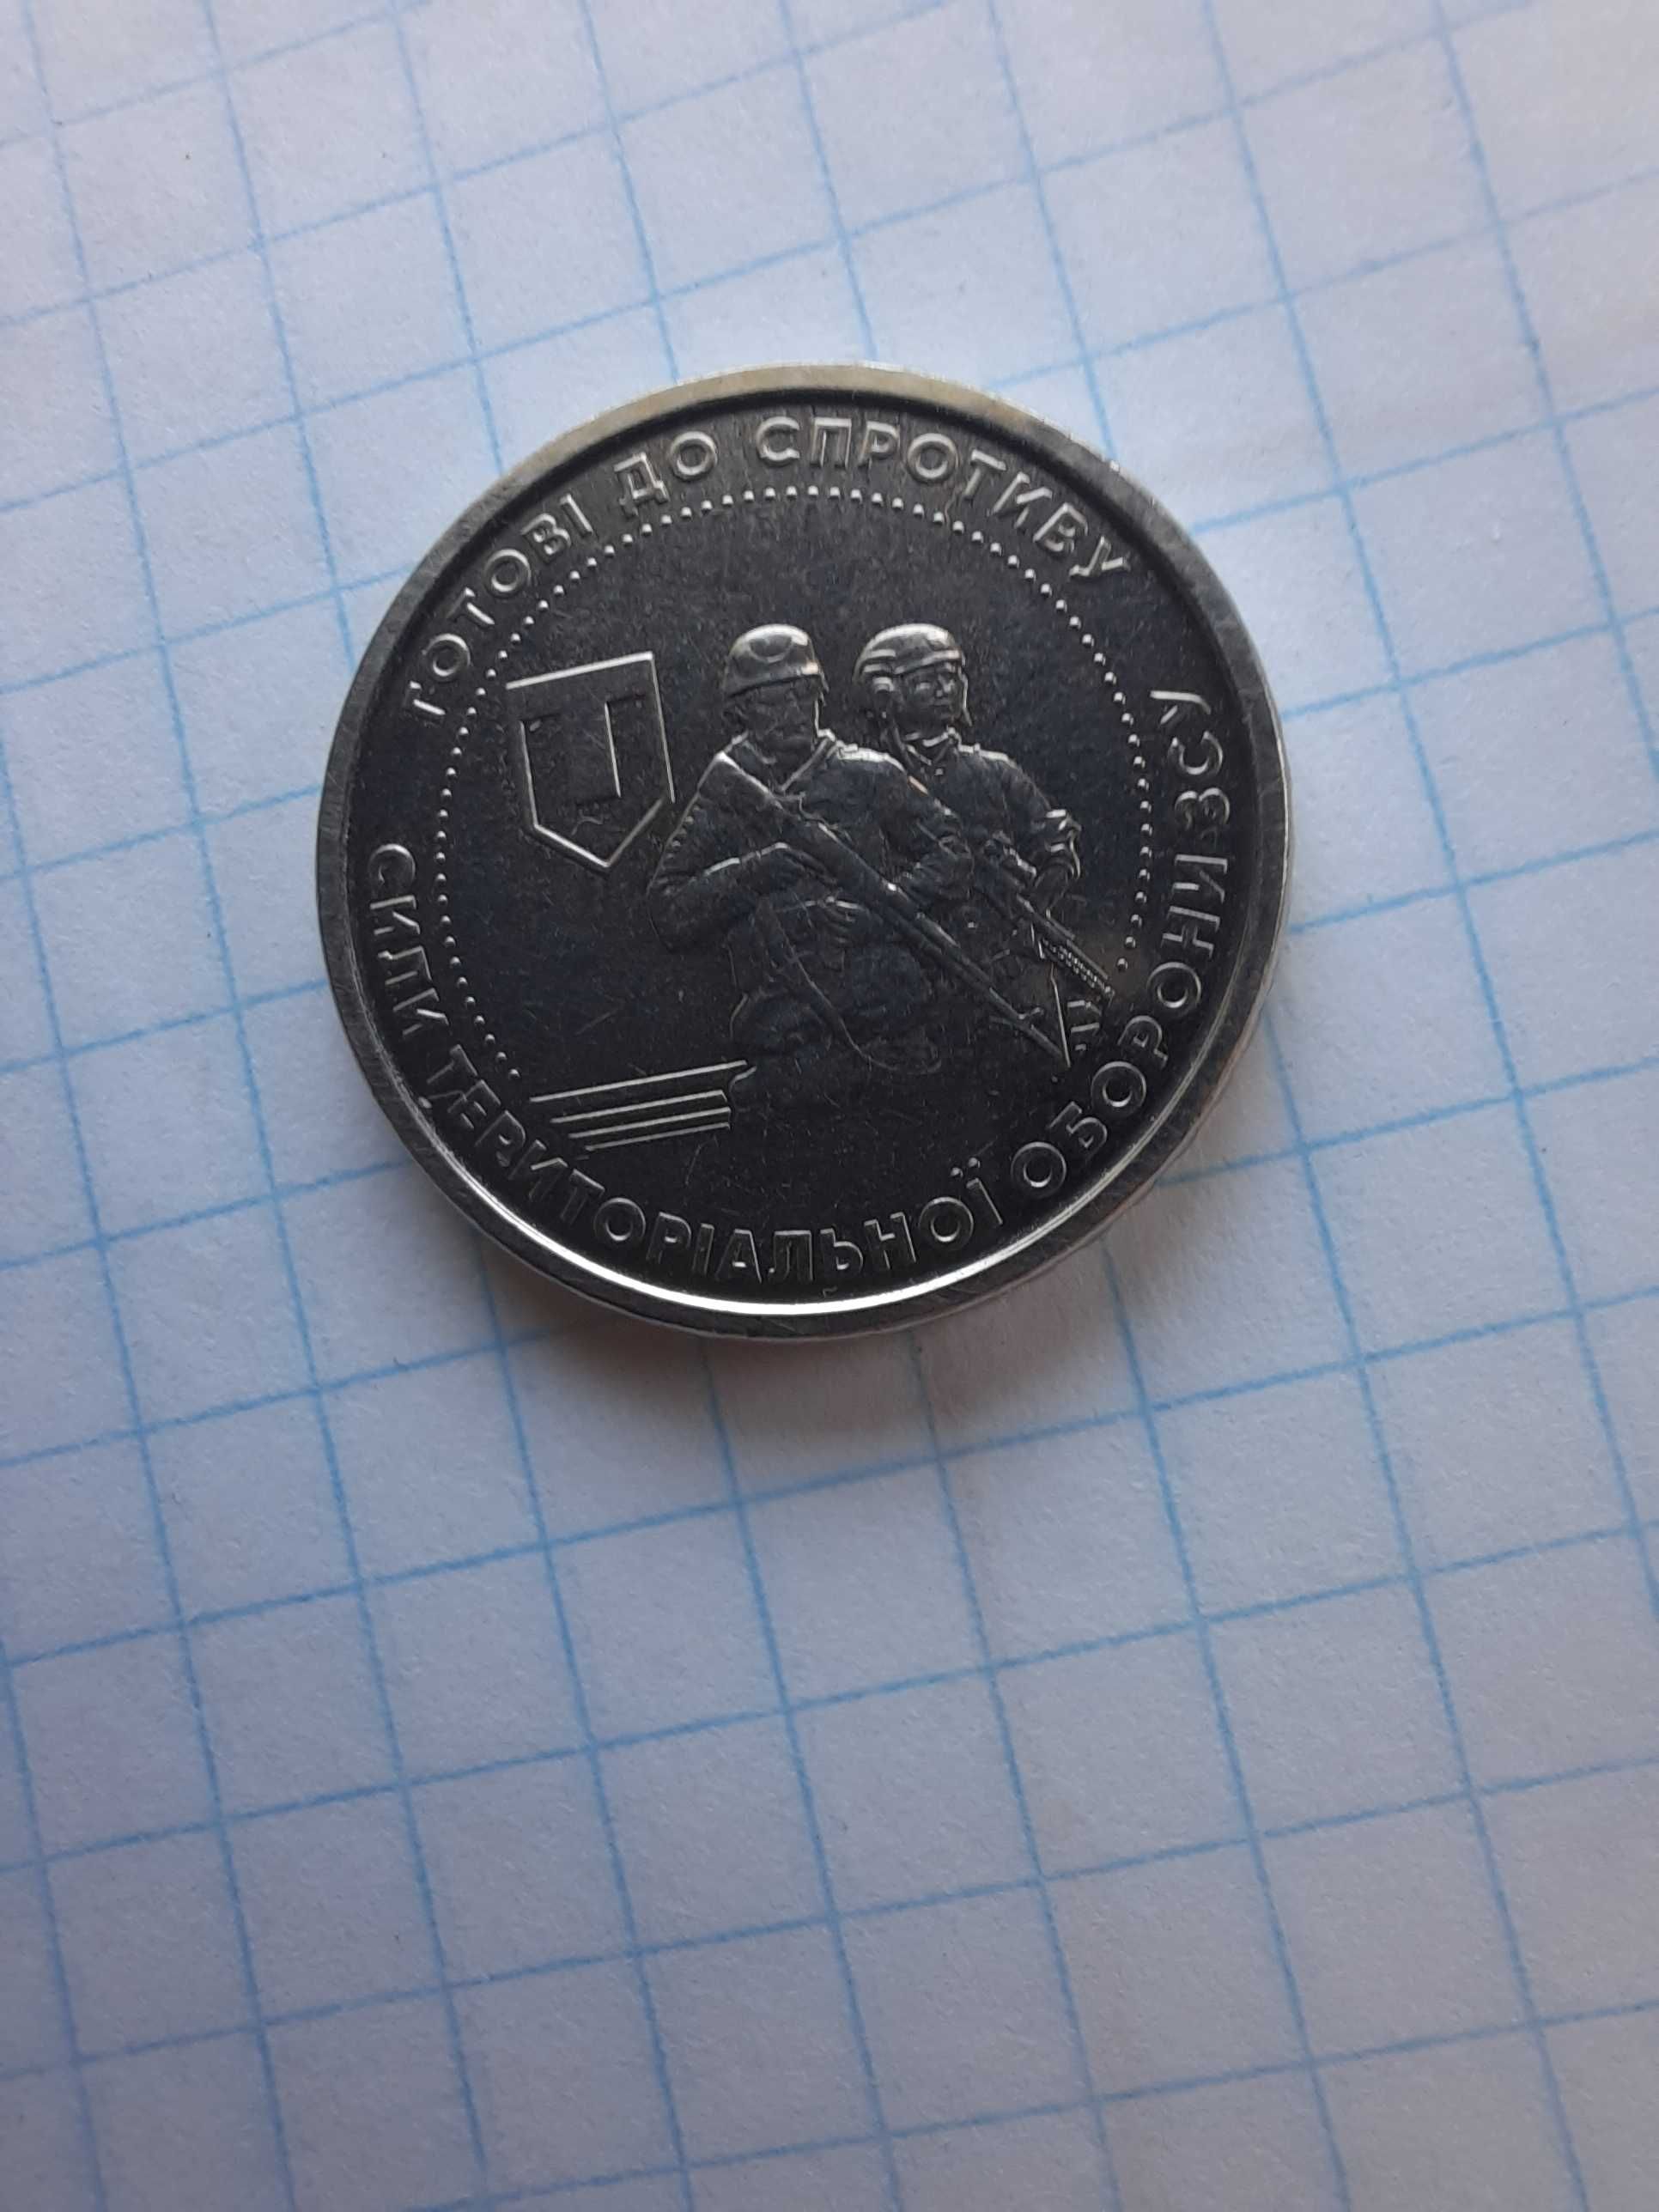 10 грн зсу монета